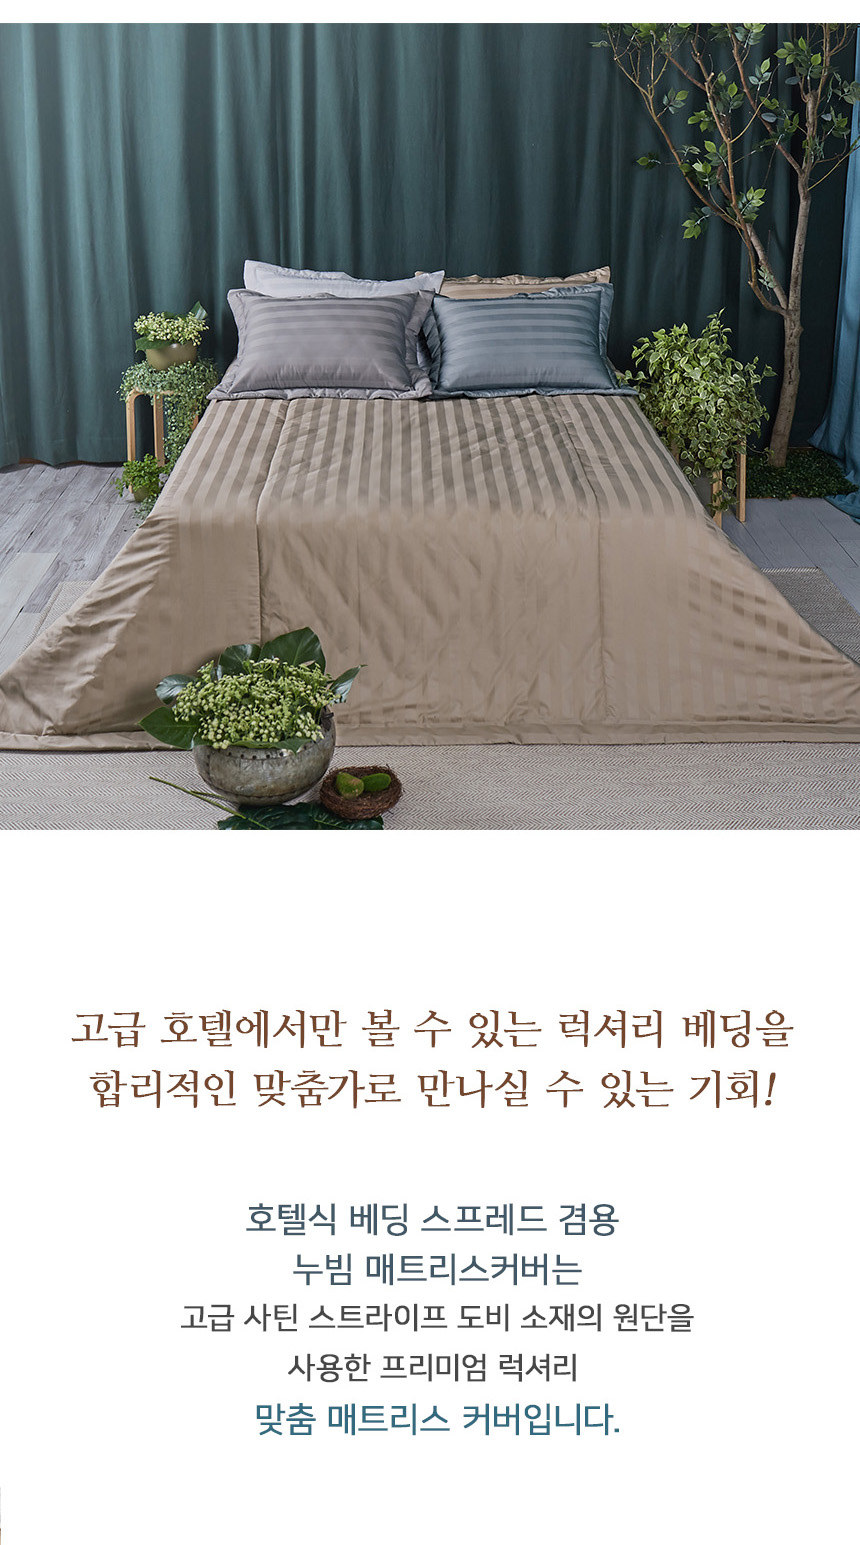 mattress_03_174331.jpg